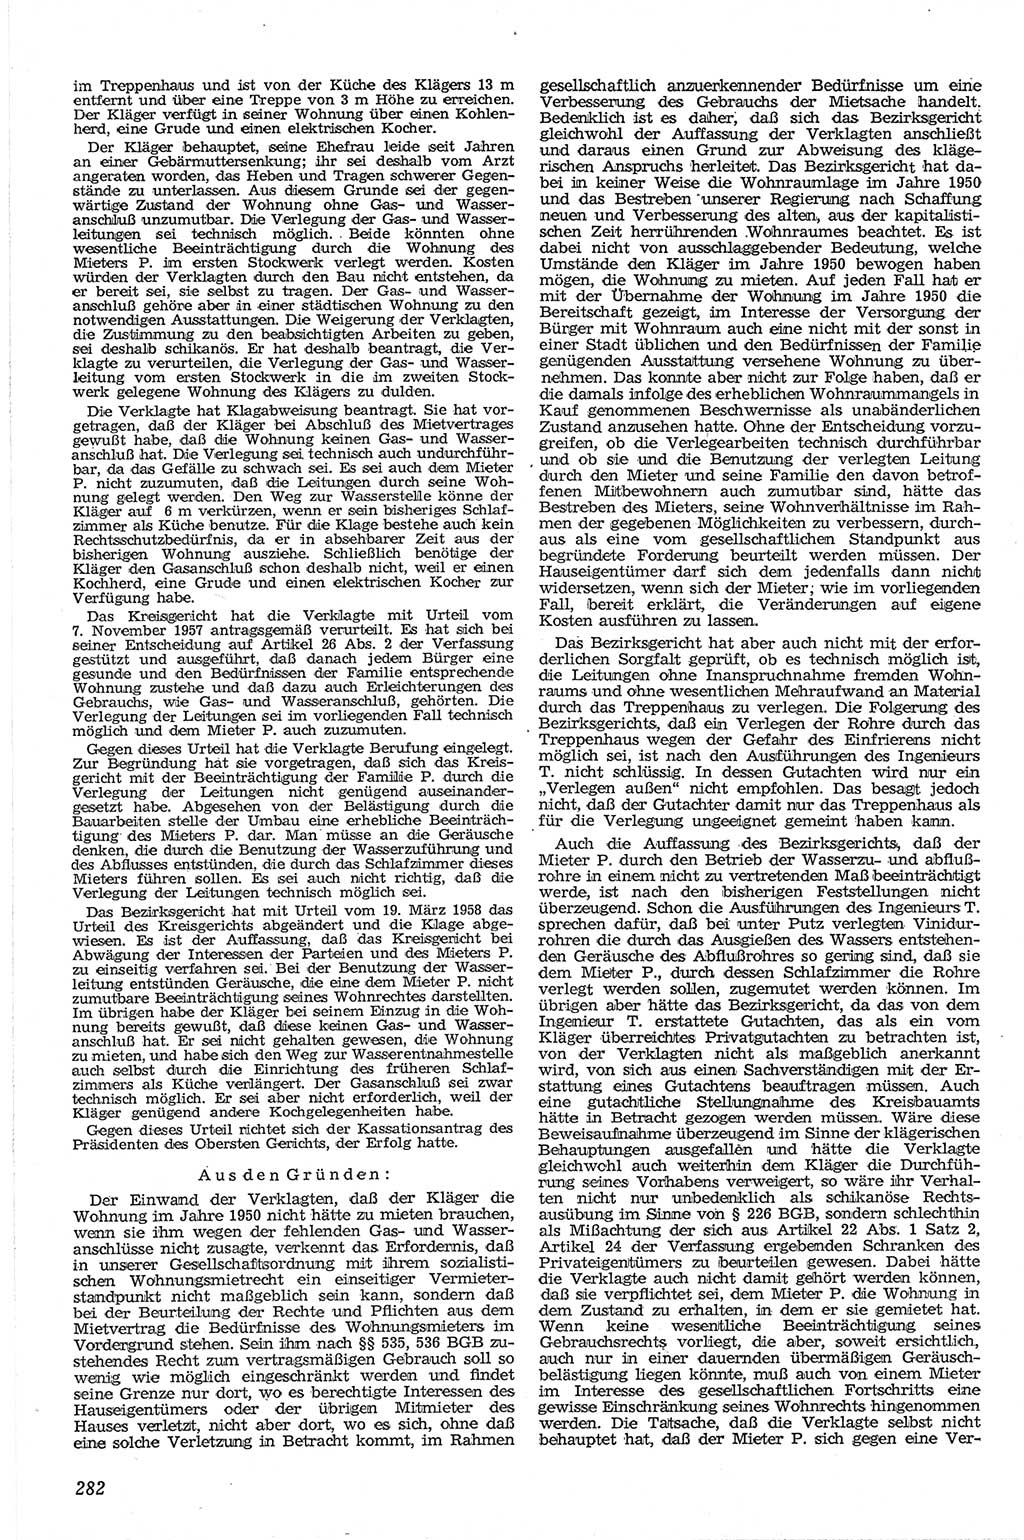 Neue Justiz (NJ), Zeitschrift für Recht und Rechtswissenschaft [Deutsche Demokratische Republik (DDR)], 13. Jahrgang 1959, Seite 282 (NJ DDR 1959, S. 282)